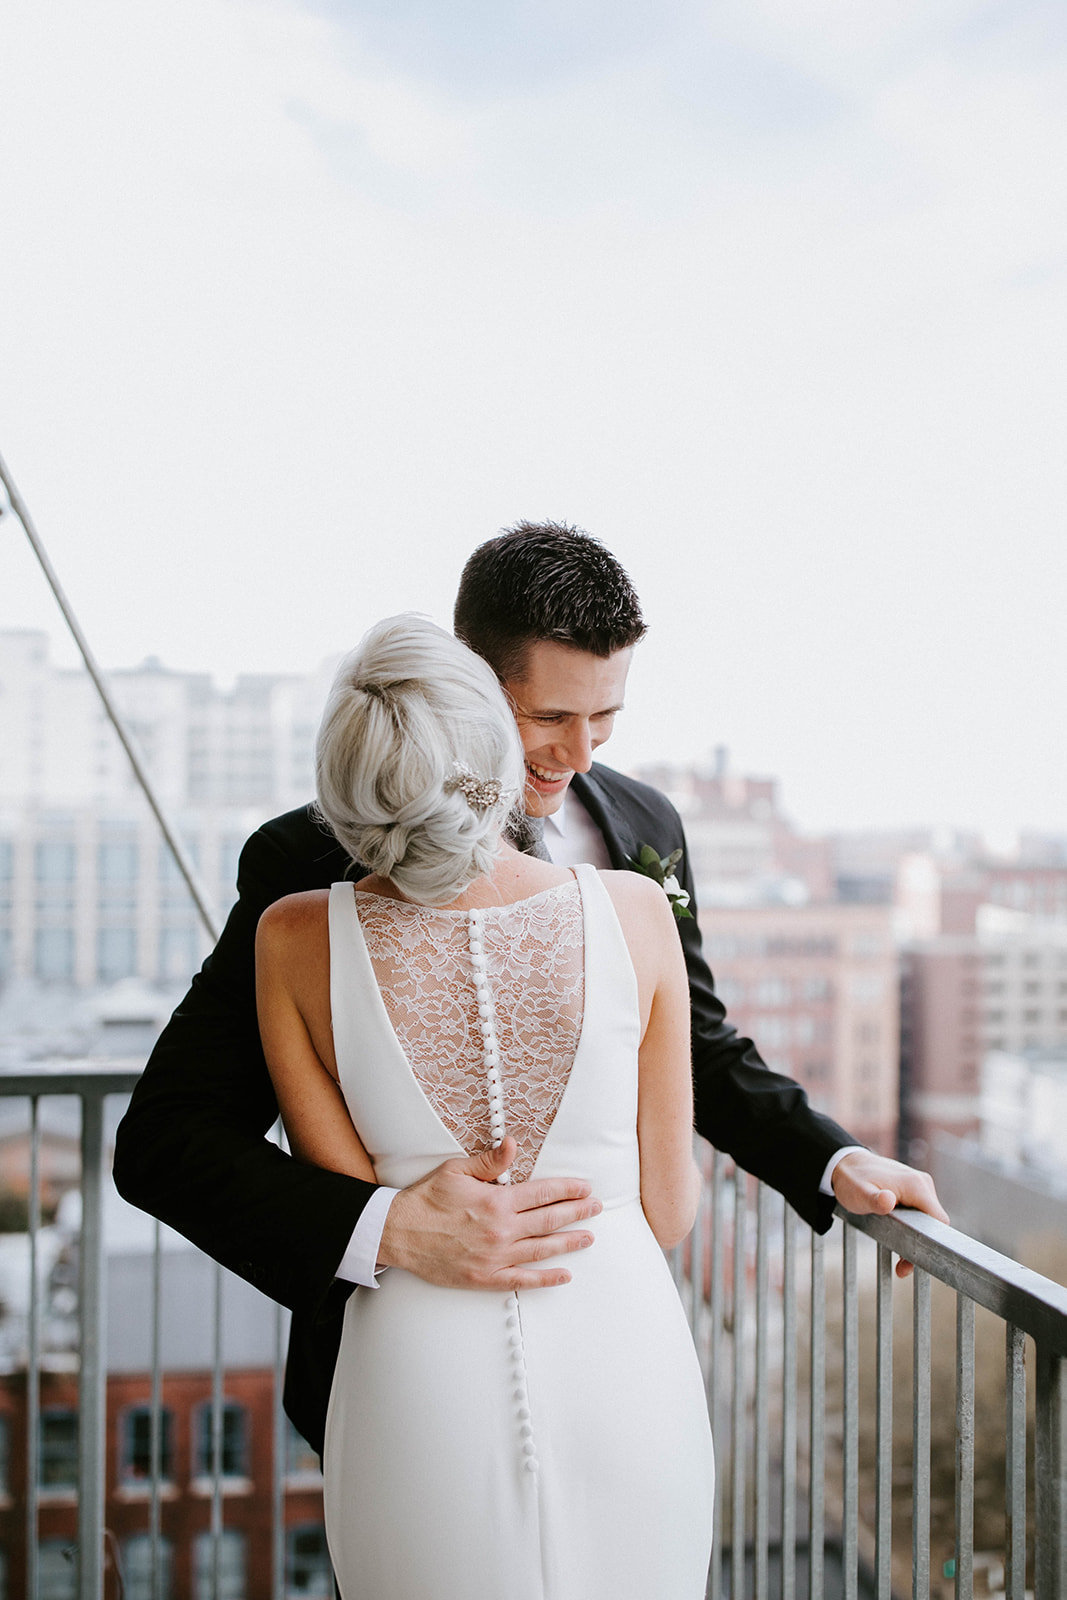 Bride and groom hug on balcony.